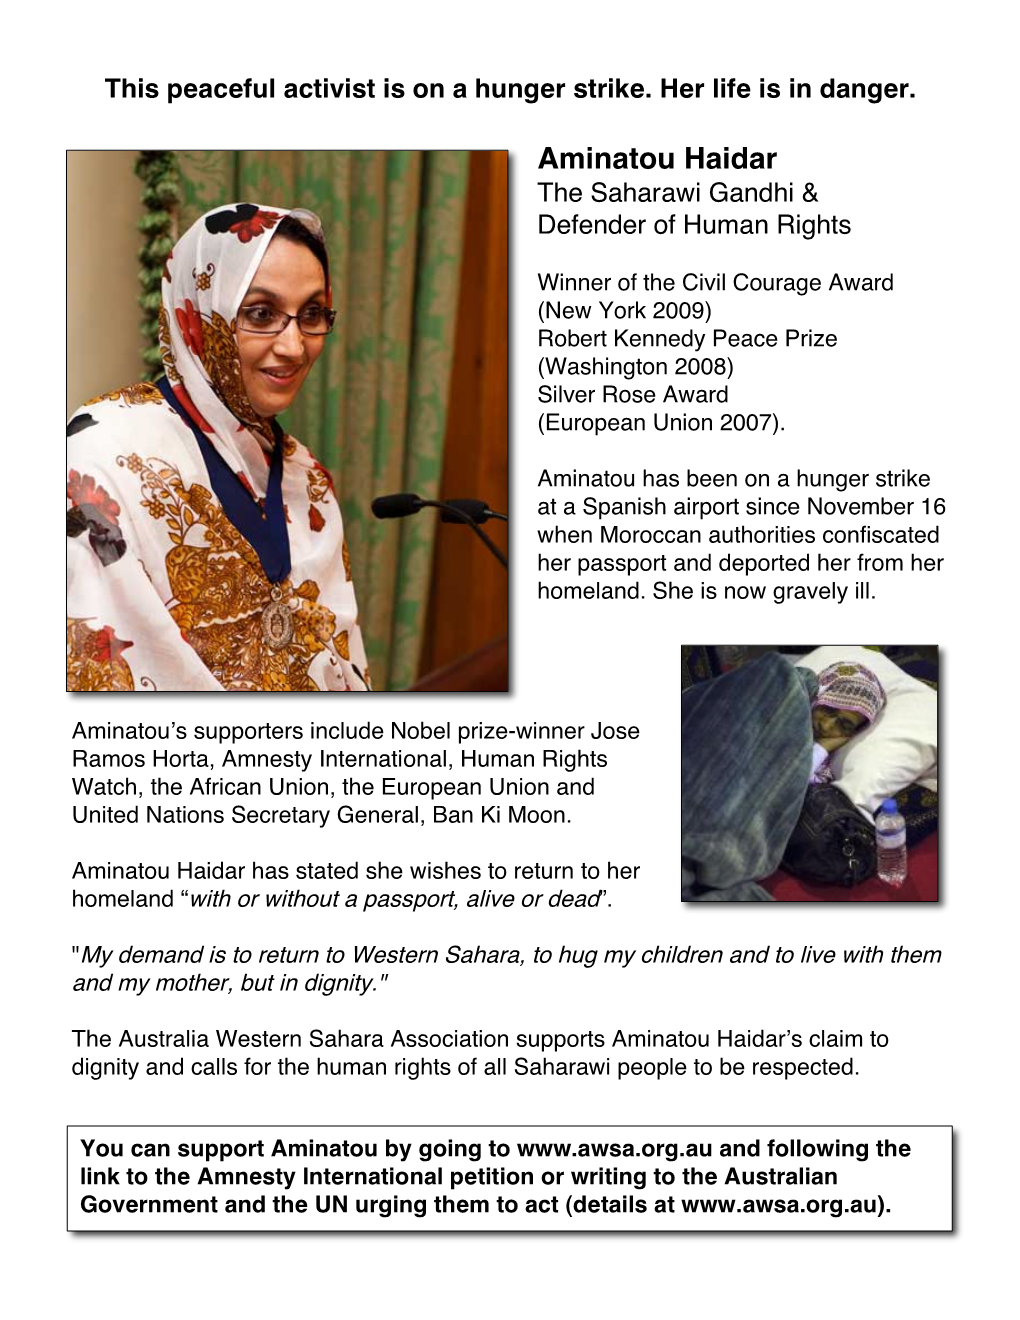 Aminatou Haidar the Saharawi Gandhi & Defender of Human Rights